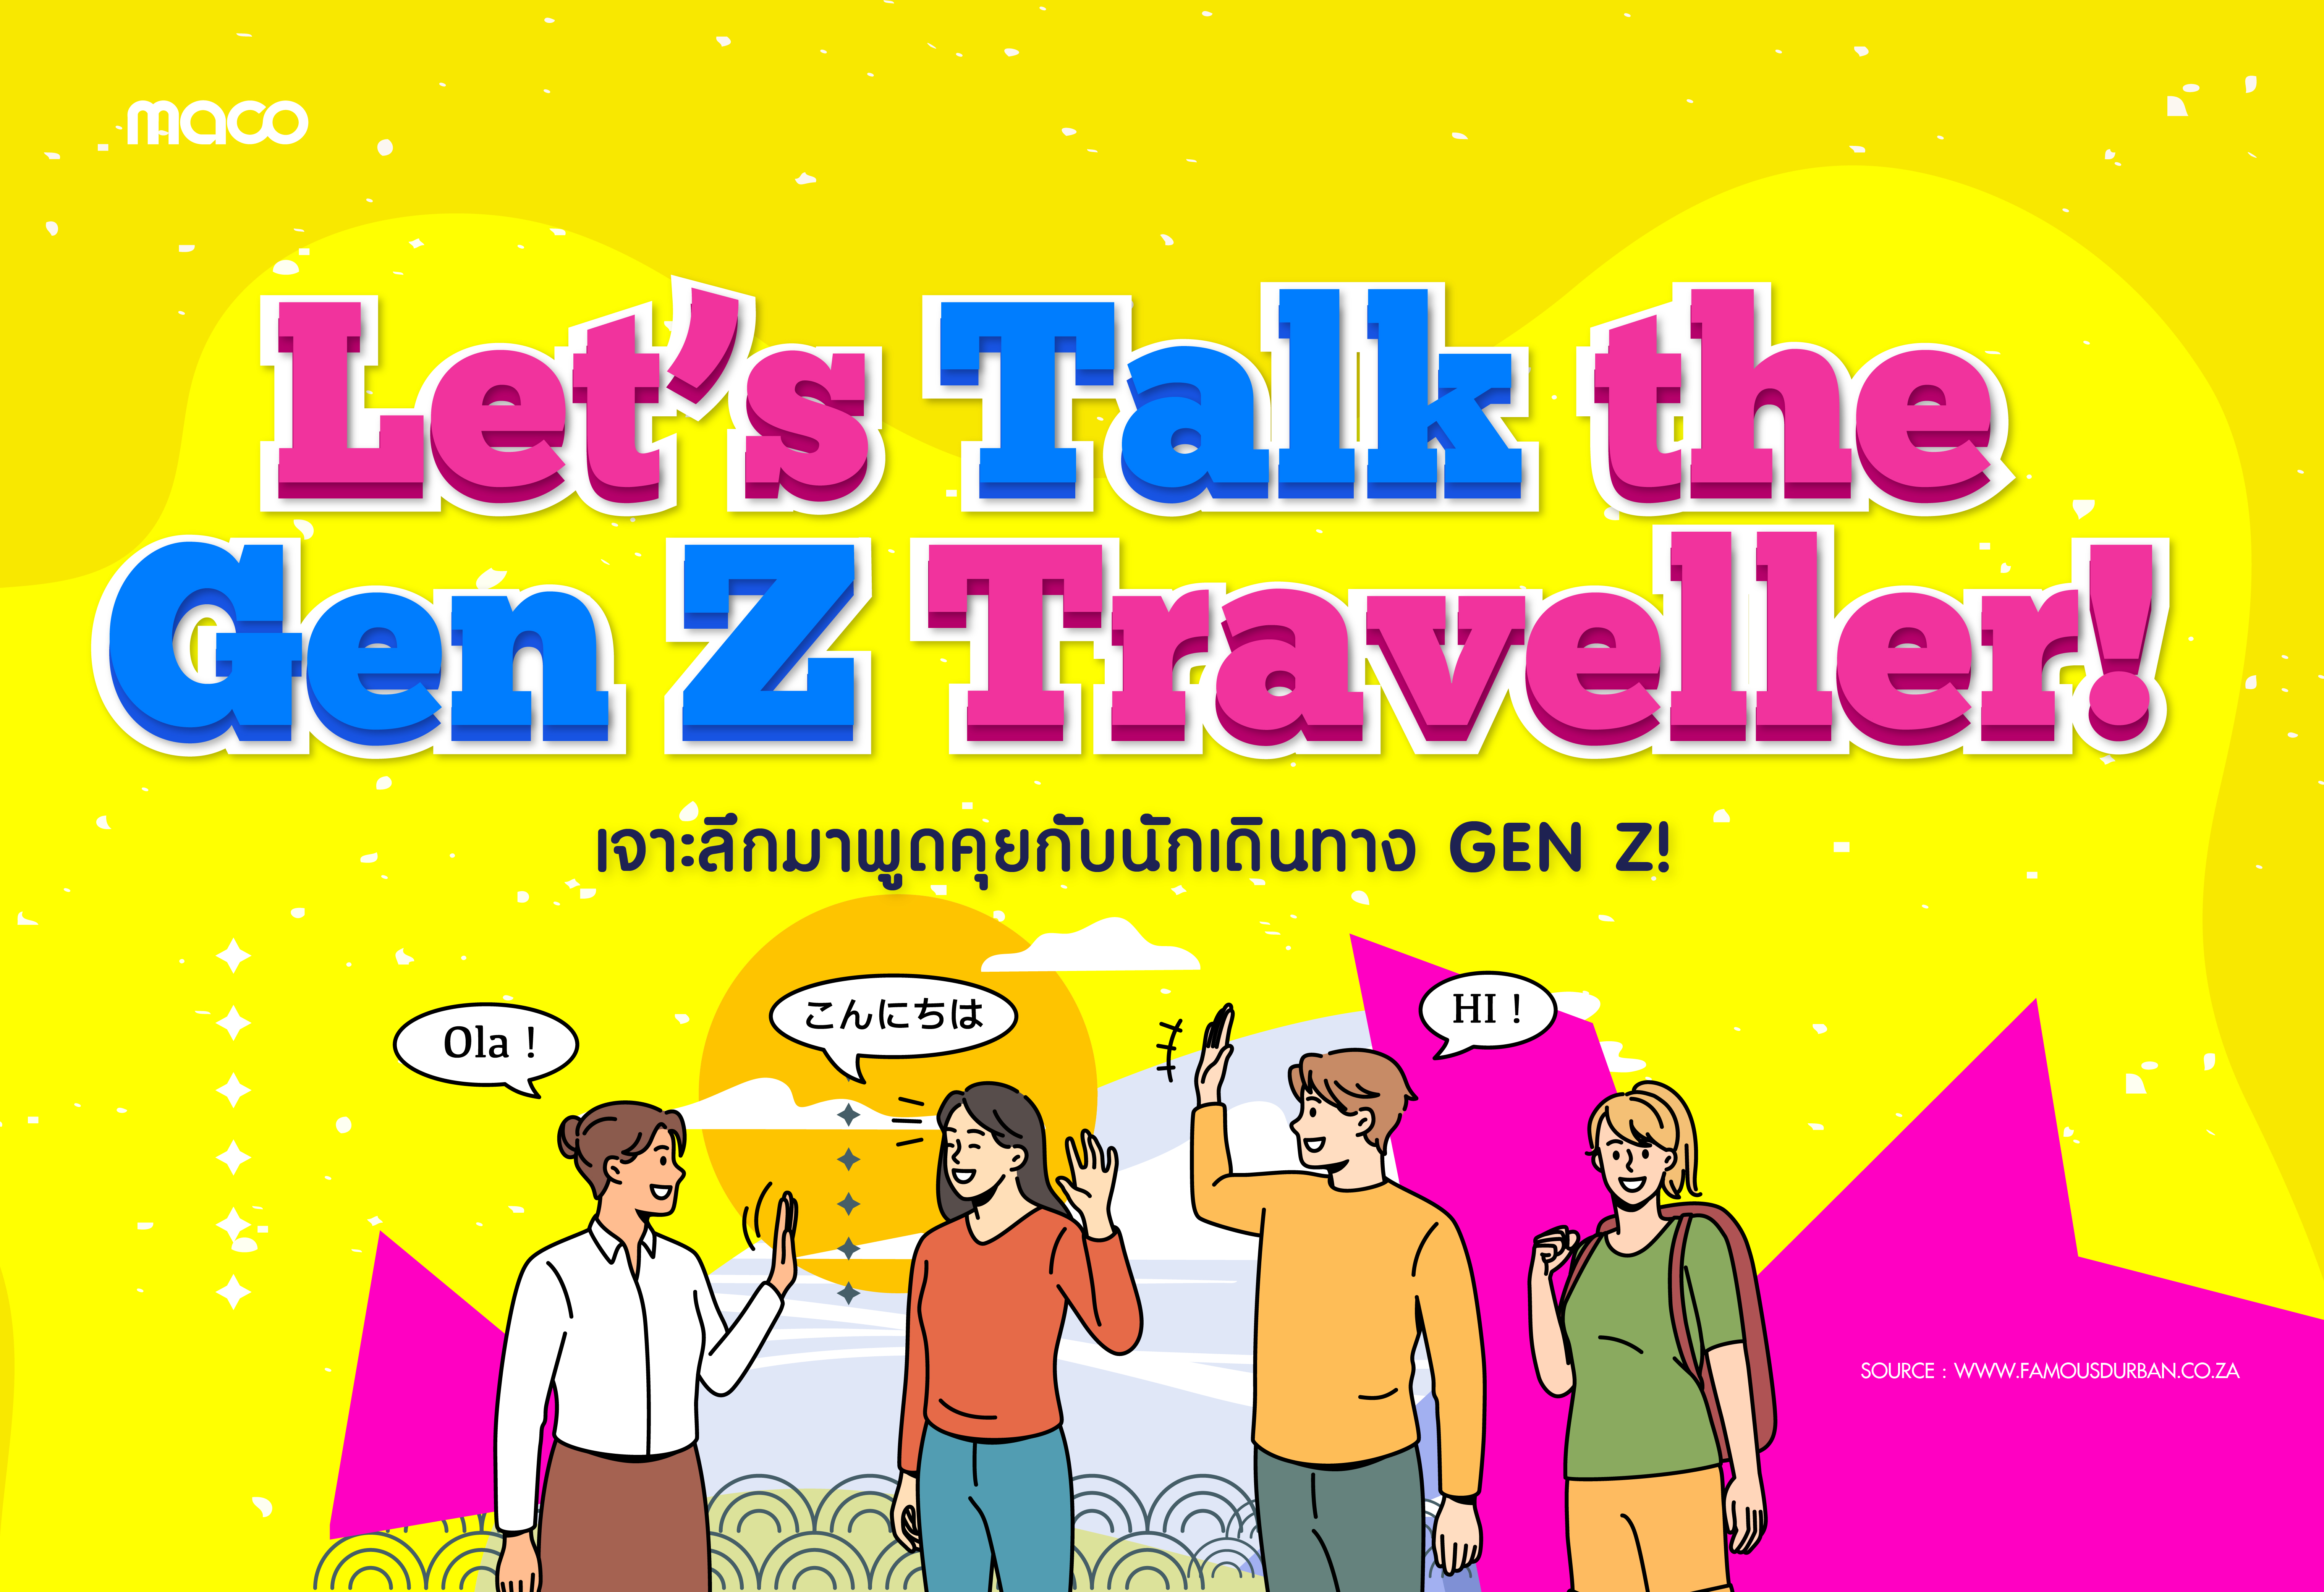 มาคุยกับนักเดินทาง Gen Z กันเถอะ!